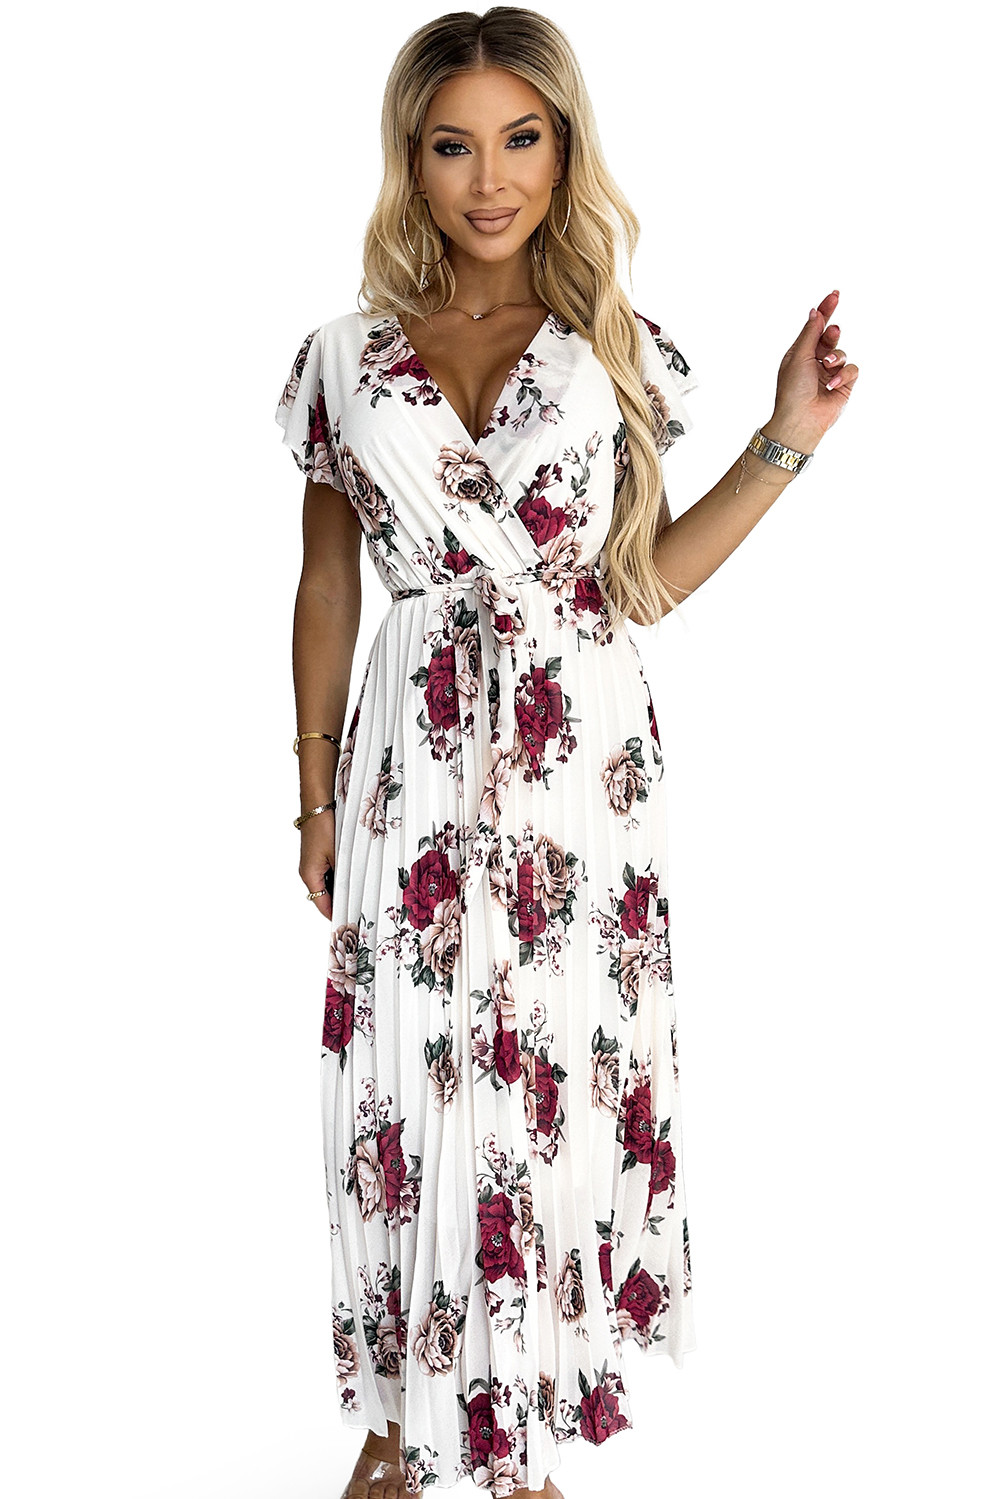 LISA - Dámské plisované midi šaty s výstřihem, volánky a se vzorem vínových bordó růží 434-7 UNI